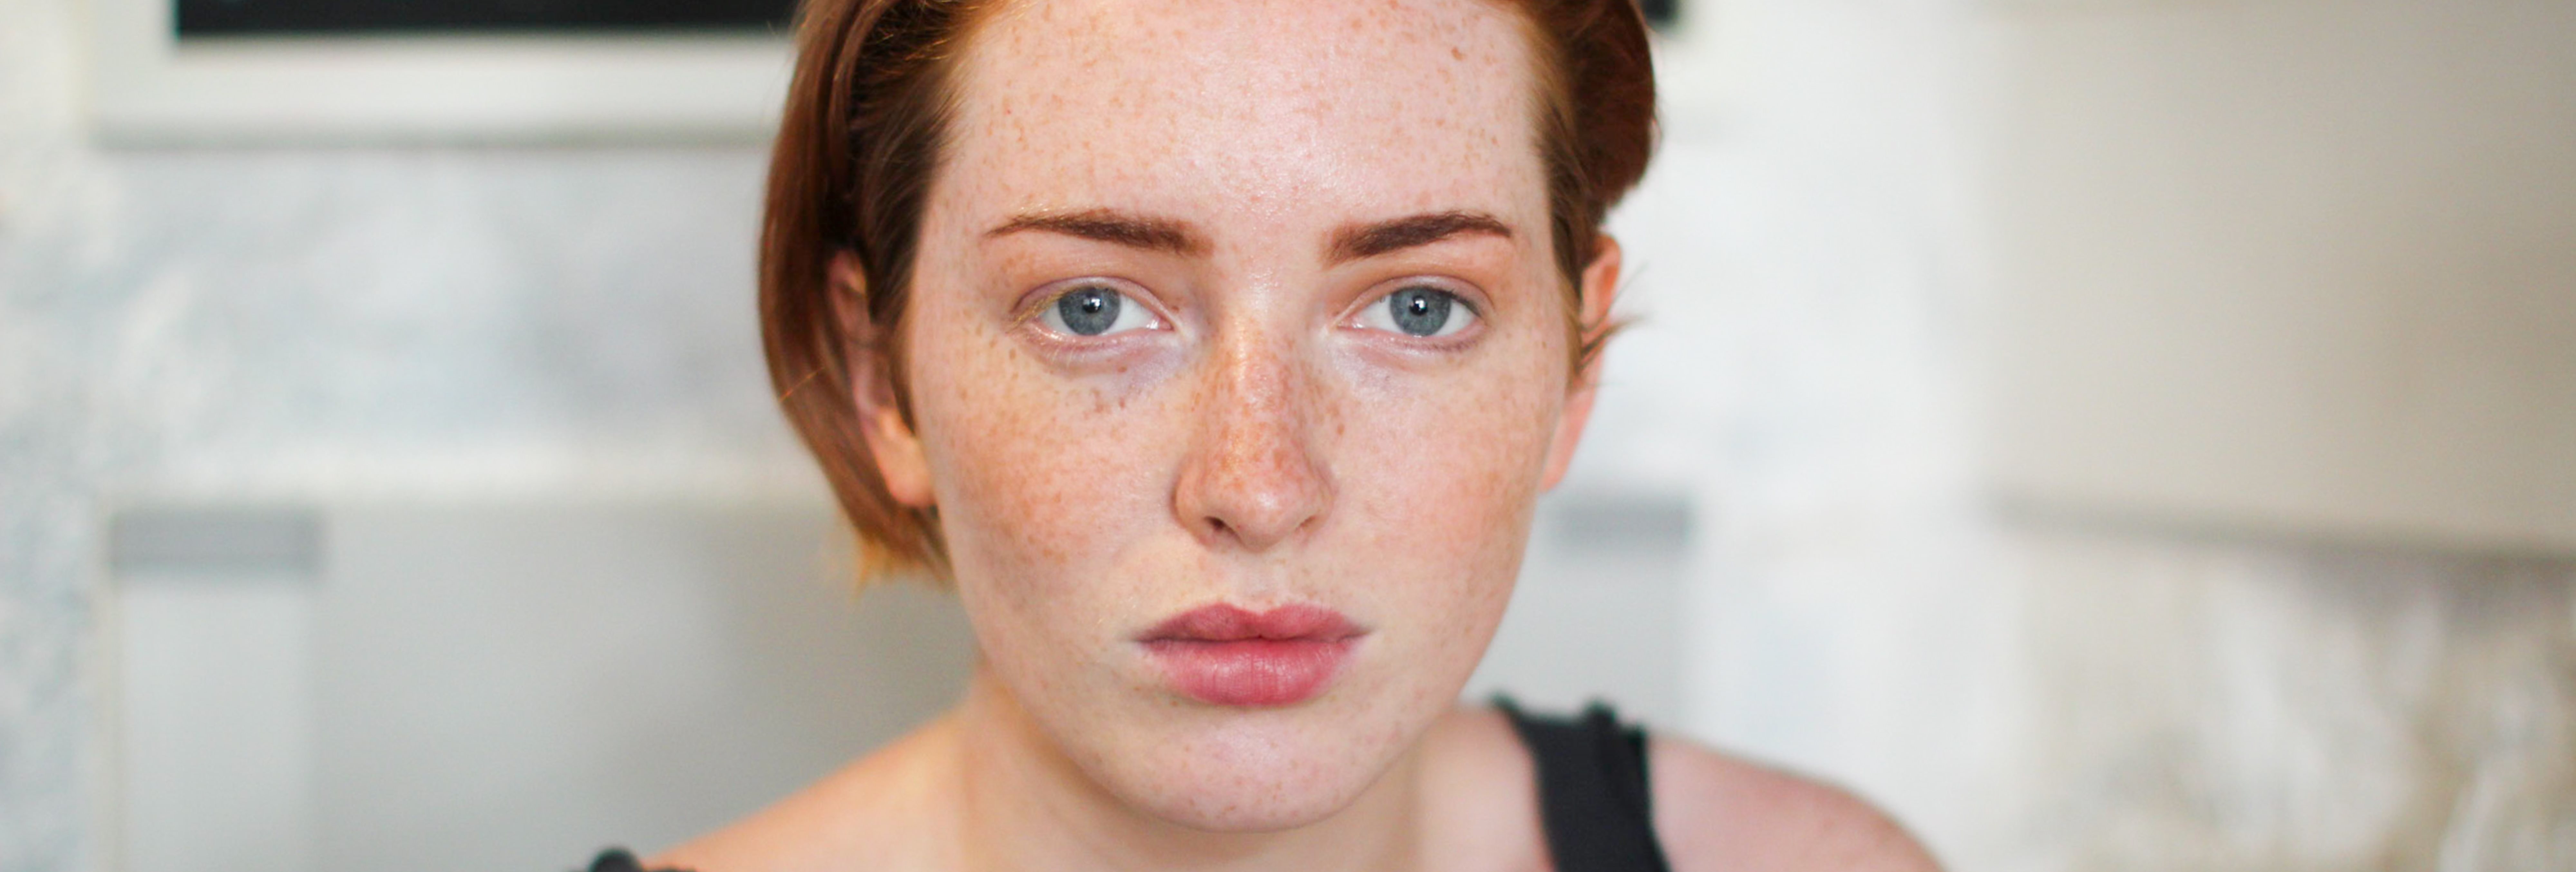 Ansiktsbild av en kvinna med normal frisk hudtyp